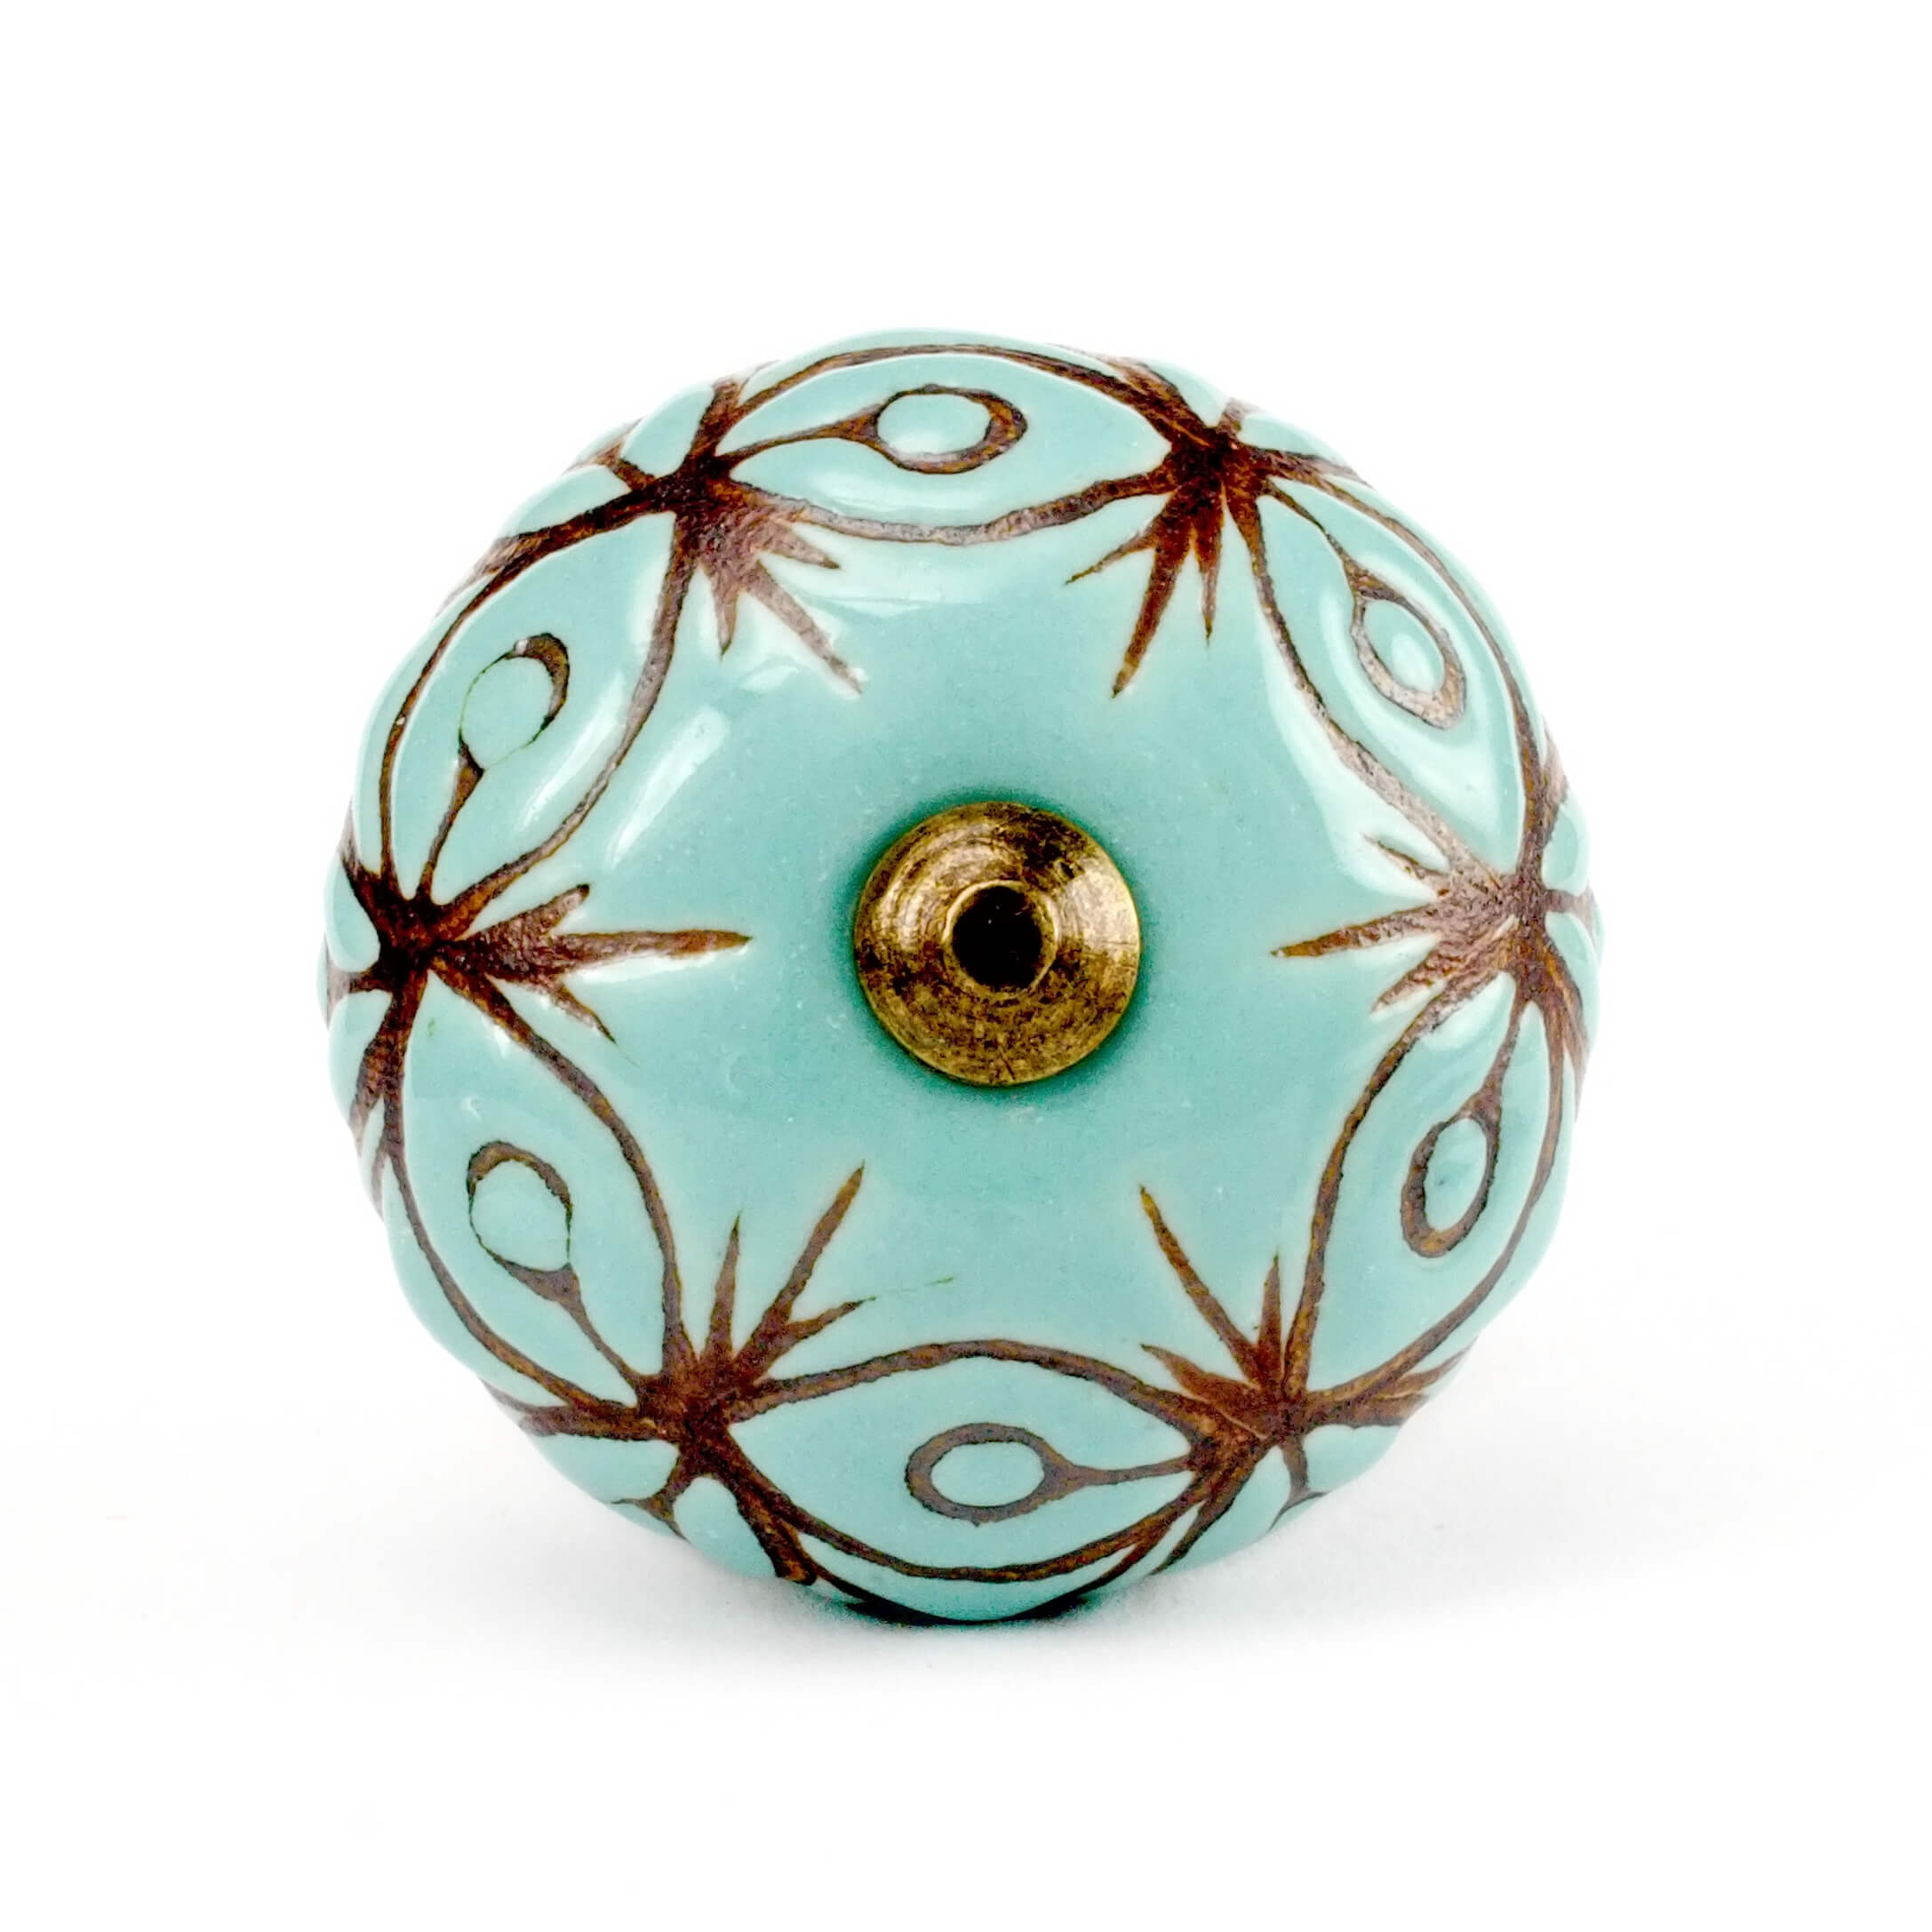 Großer Möbelknopf in türkis mit braunen Ornamenten